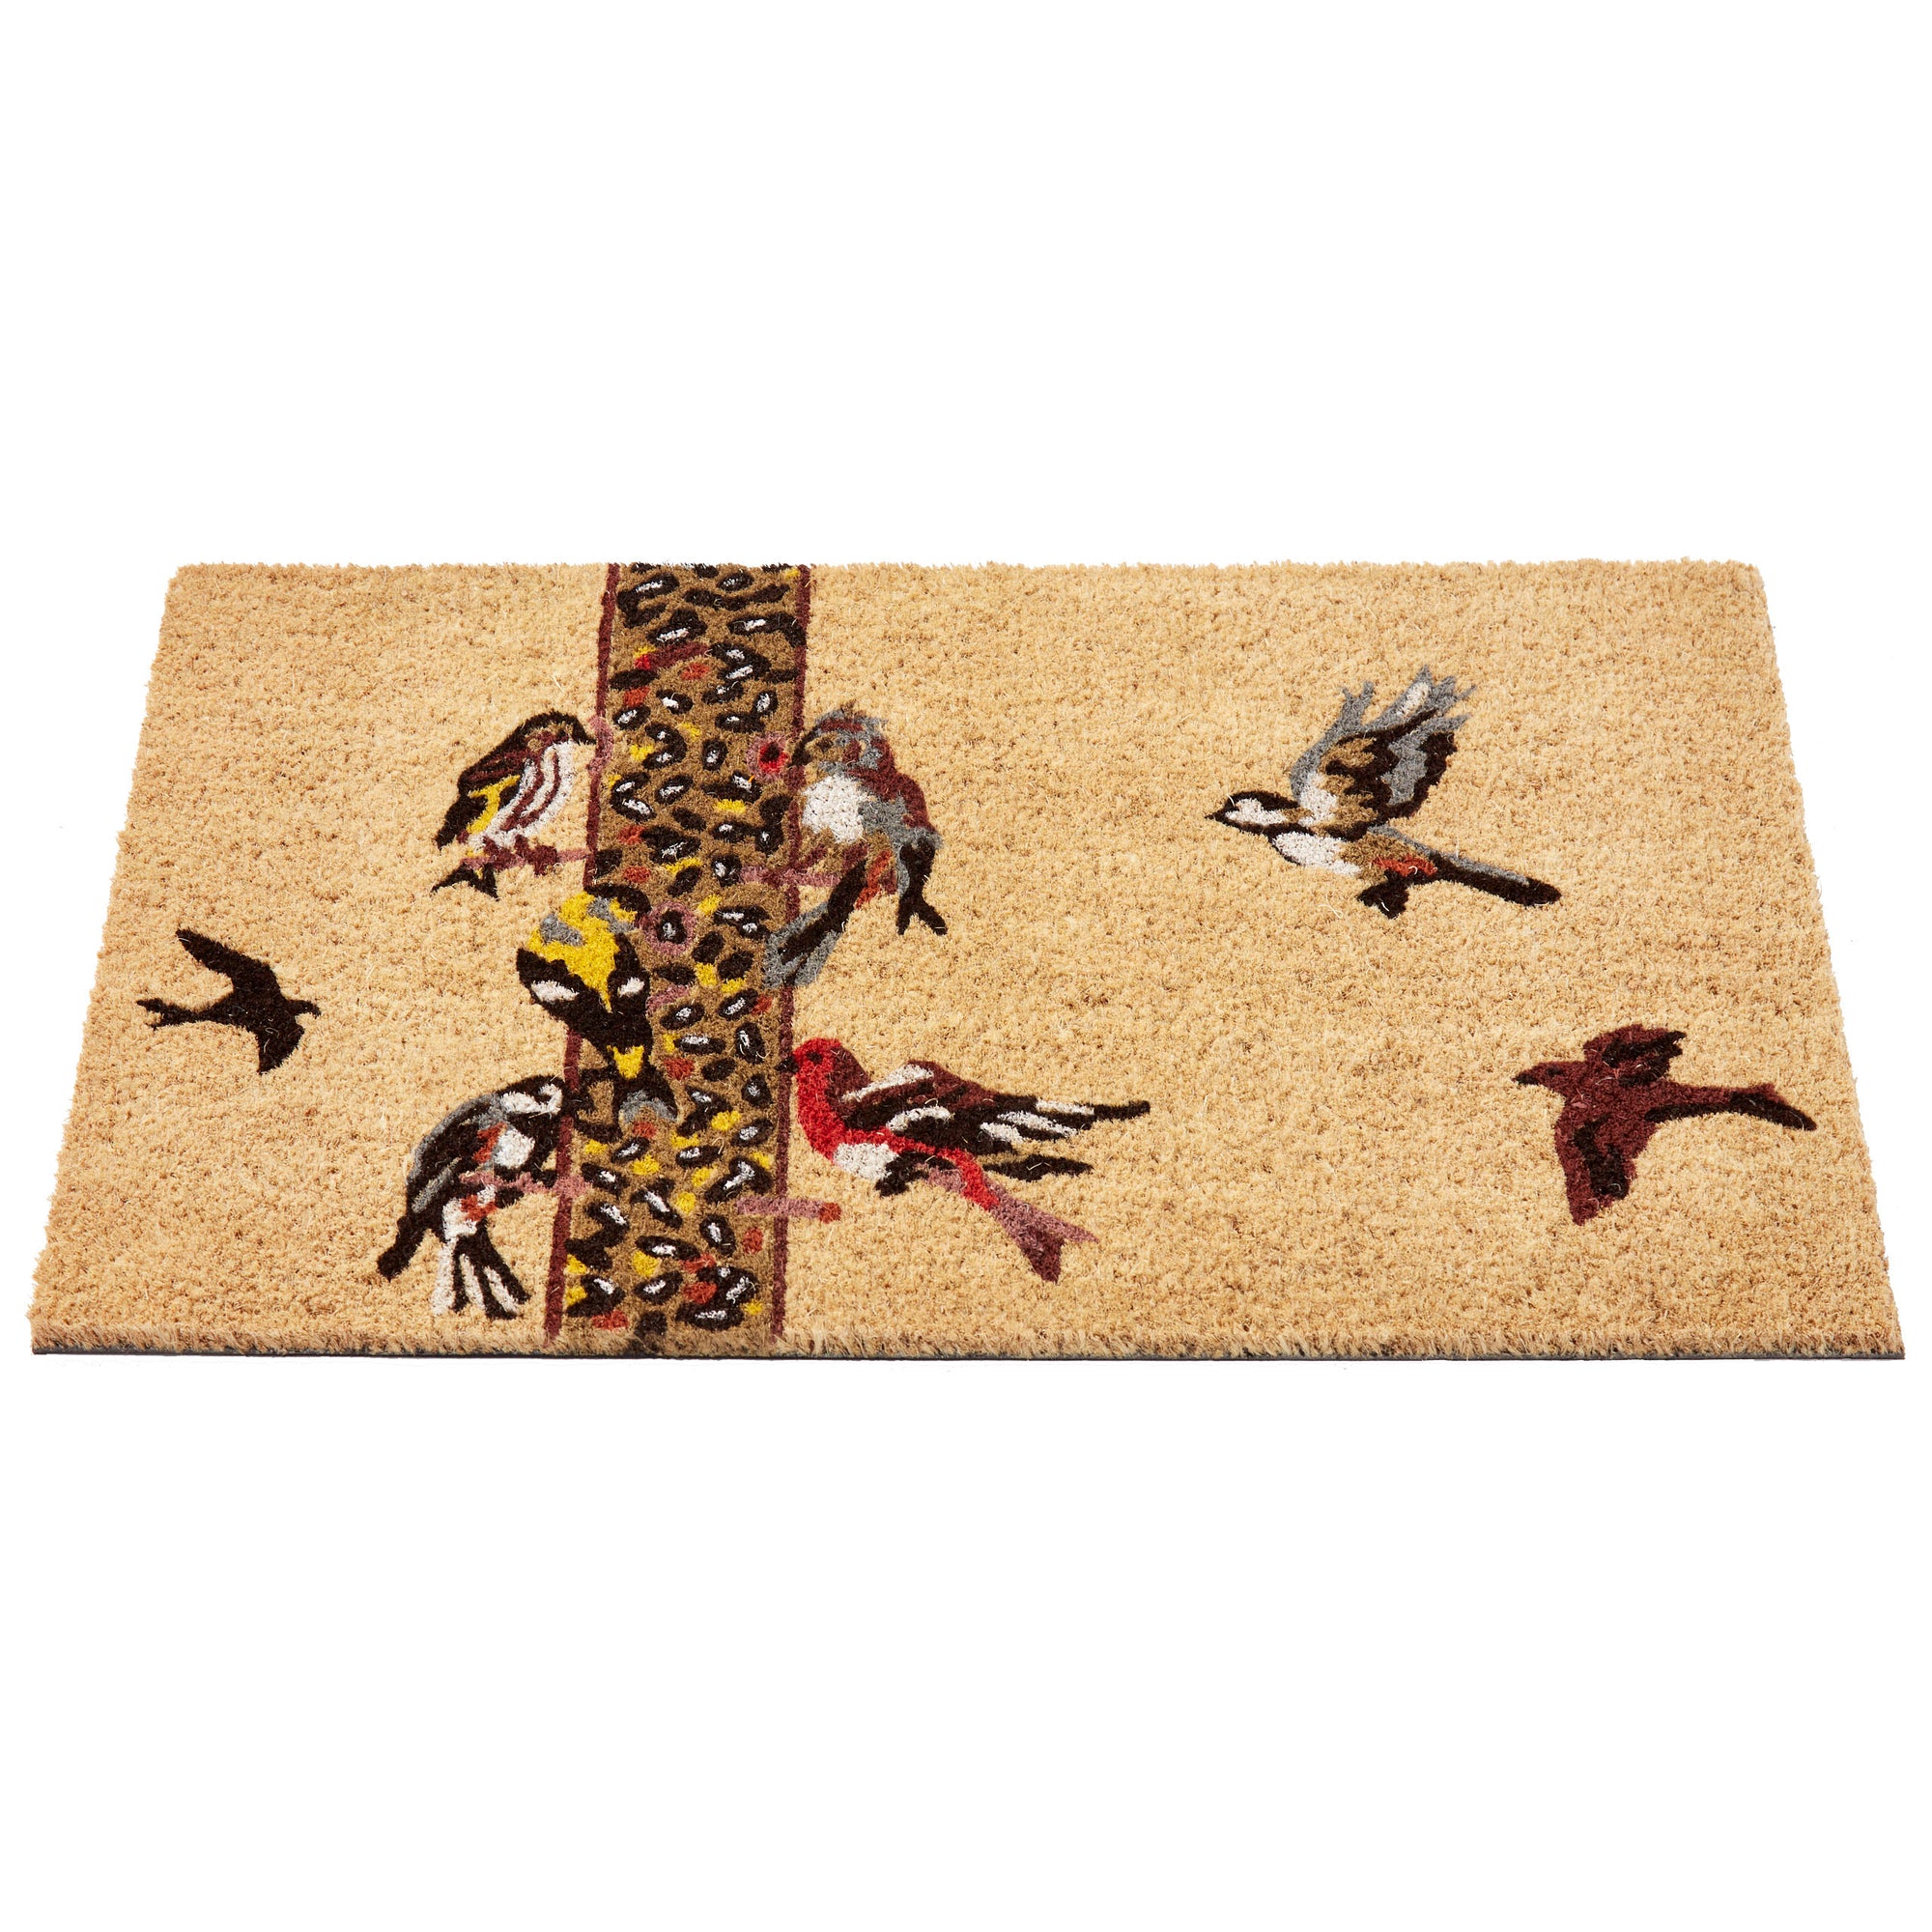 Backyard Birds Doormat